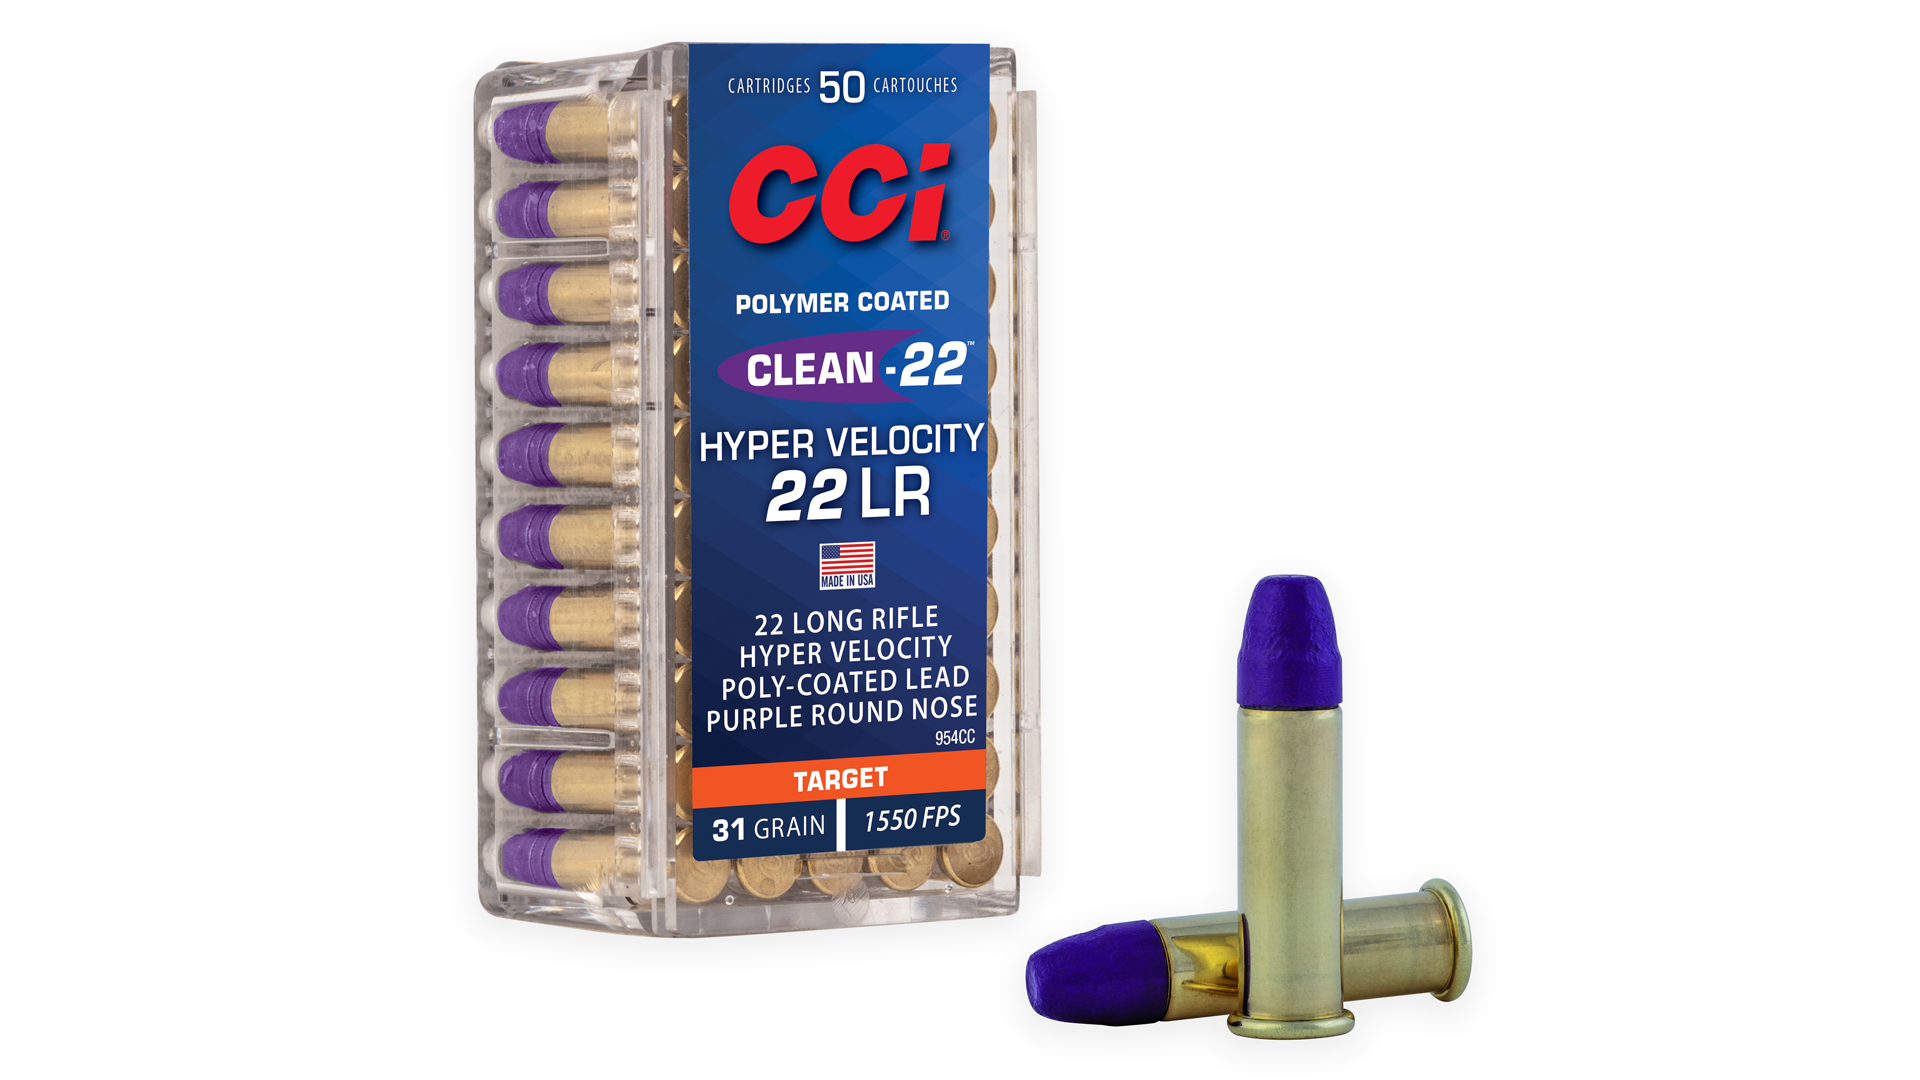 CCI Clean-22 Hyper Velocity ammunition 22 LR blue tip bullets new product announcement SHOT Show 2023